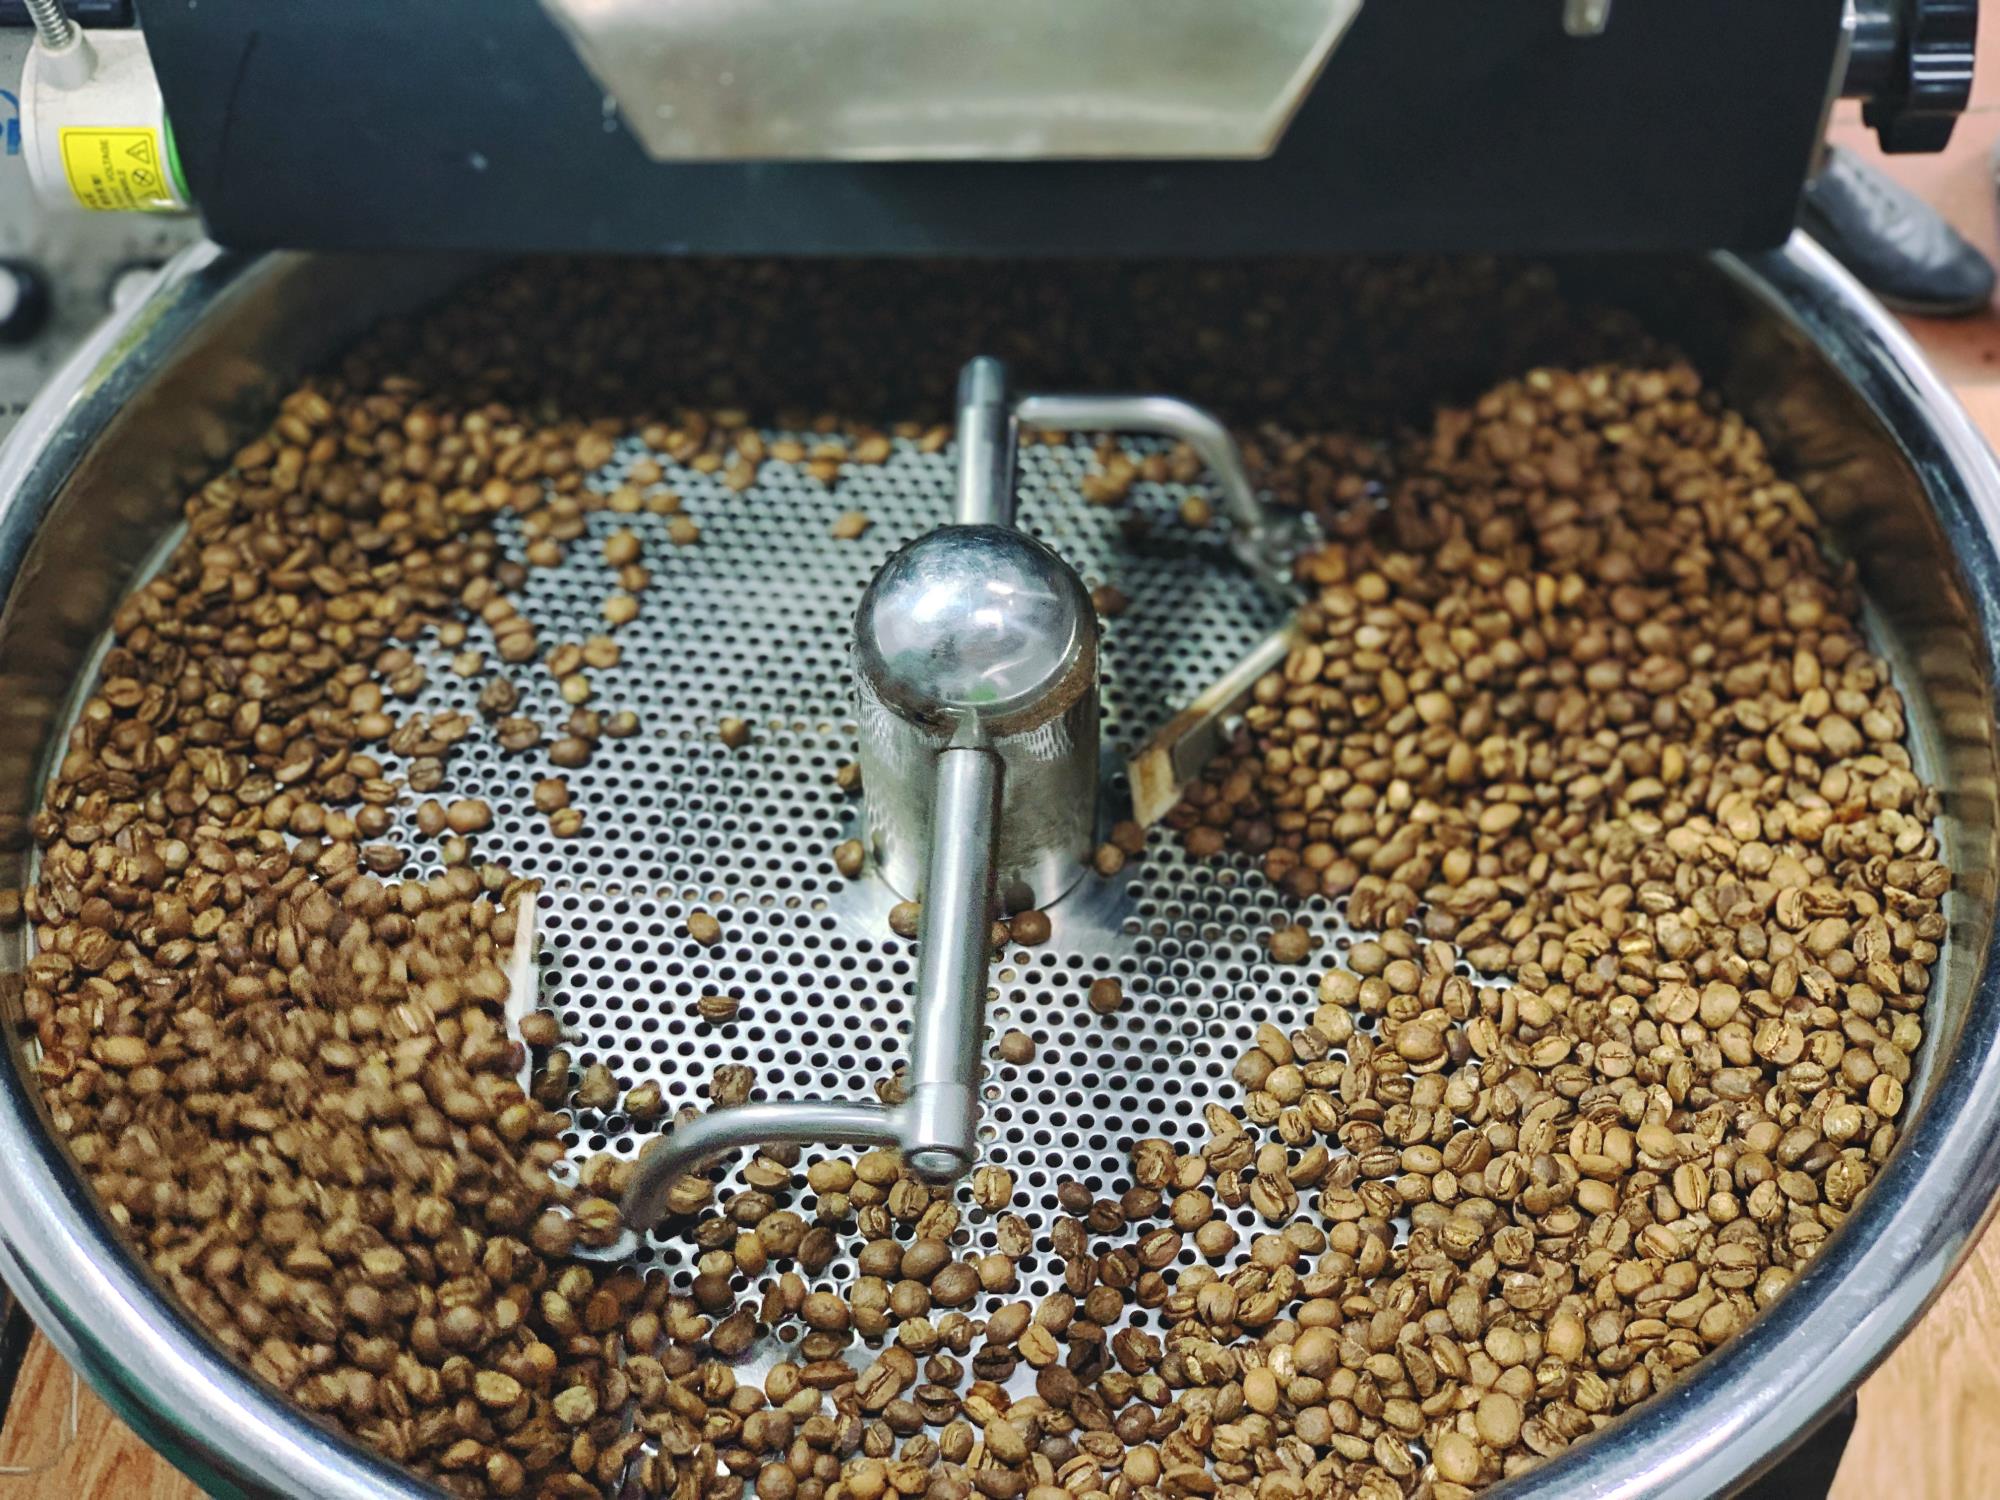 Cà phê đặc sản Huế - Arabica A Lưới (chế biến khô) Greenfields Coffee 250g